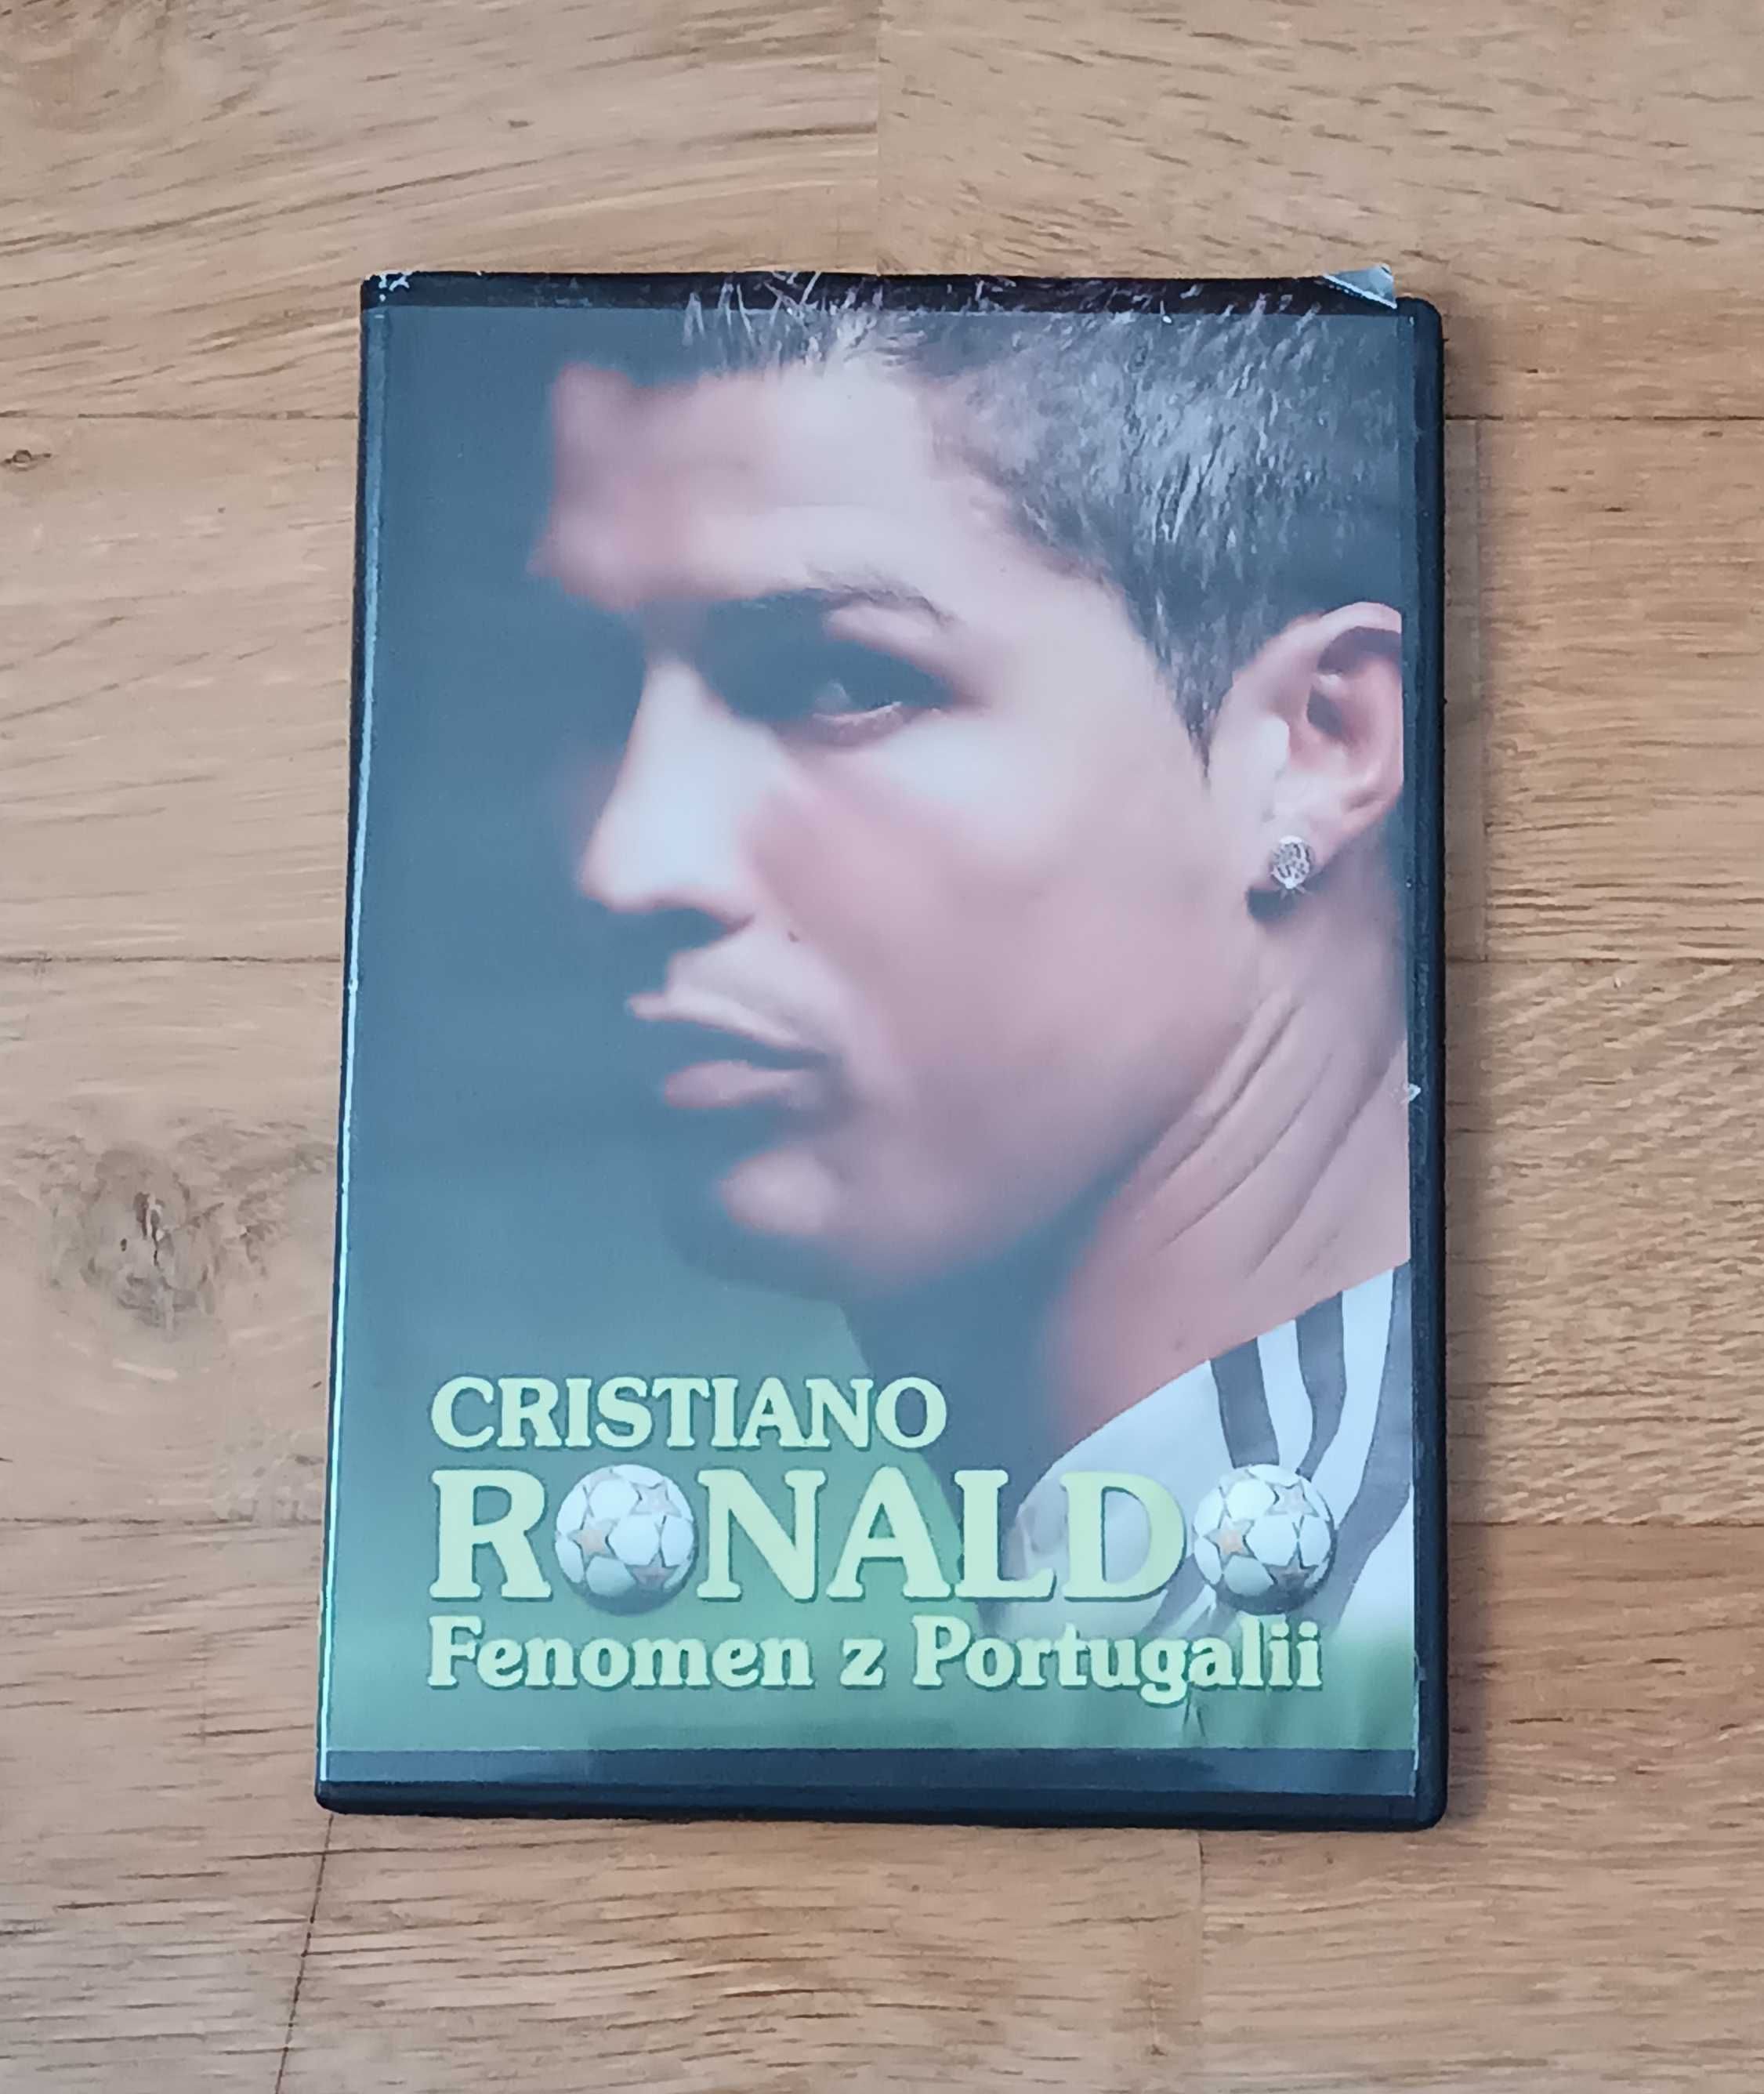 Cristiano Ronaldo Fenomen z Portugalii Film DVD Płyta CD piłkarz nożna